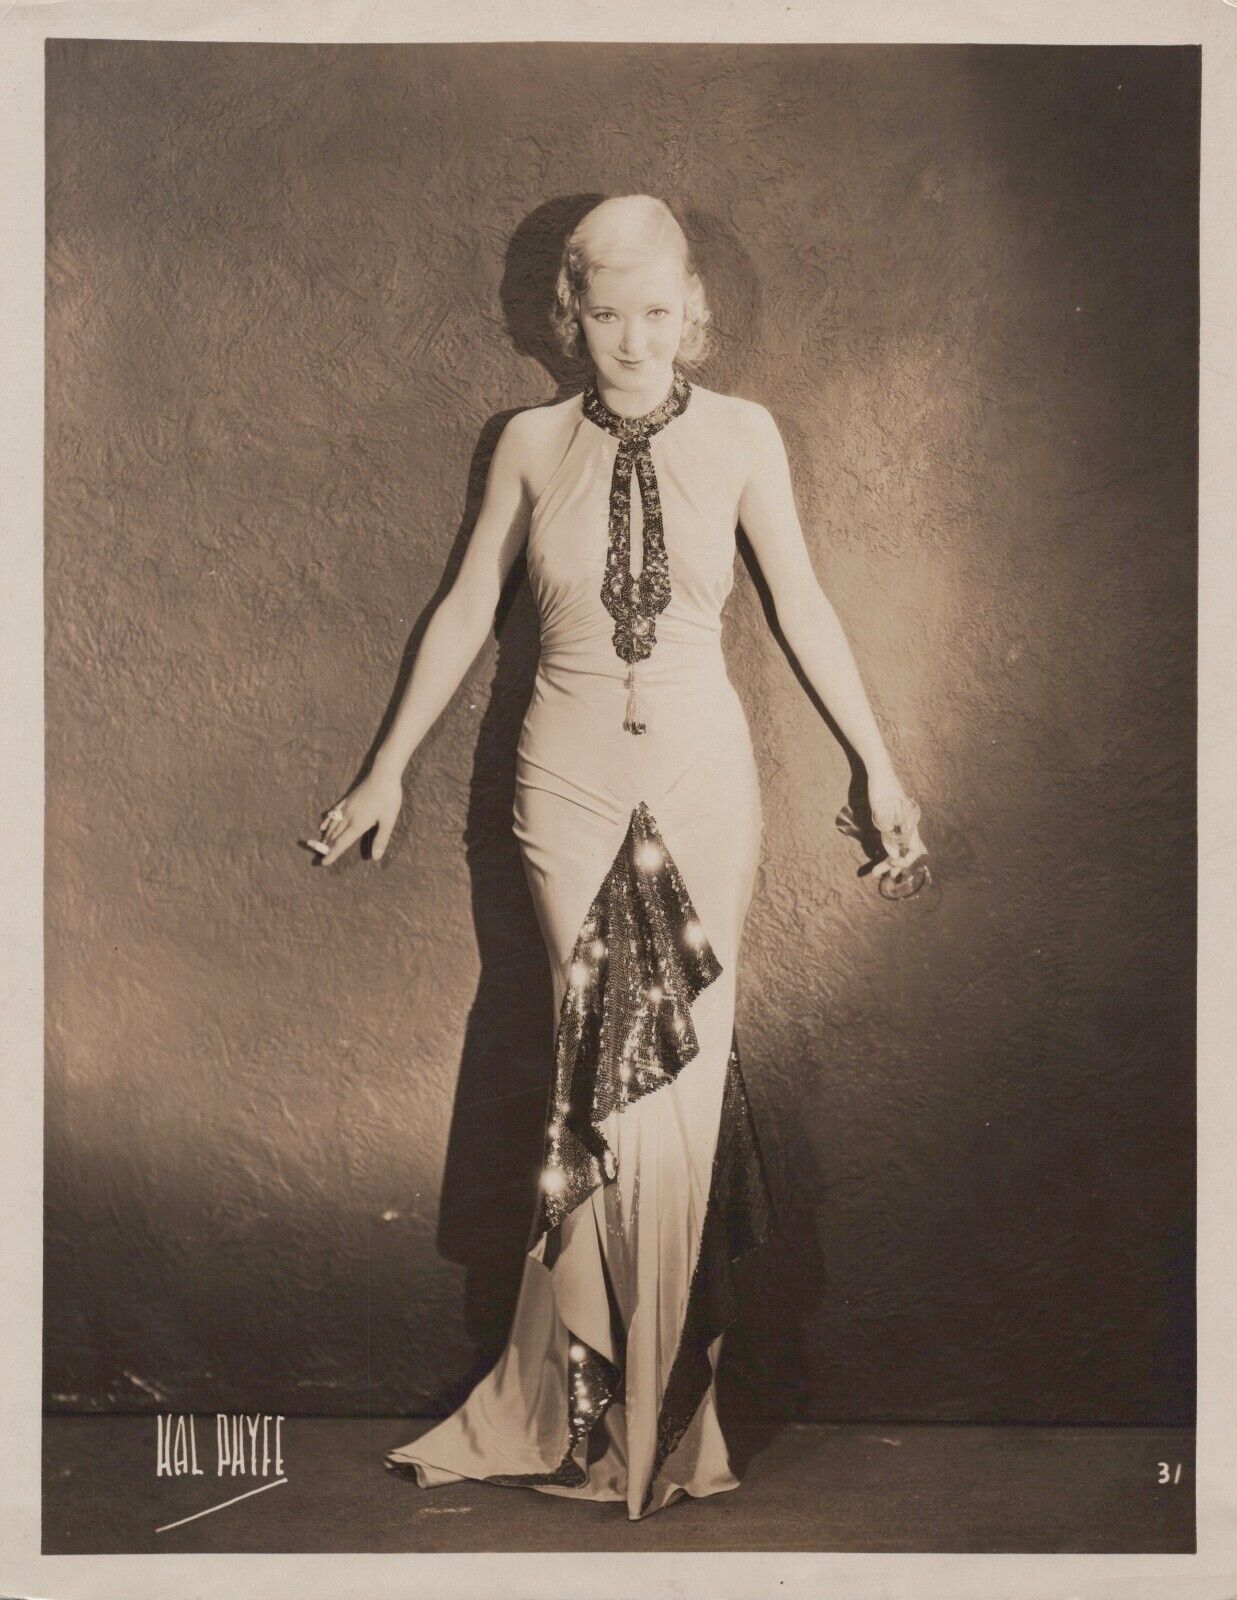 Linda Watkins (1930s) Stylish Glamorous Pose Vintage Photo by Hal Phyfe K 249